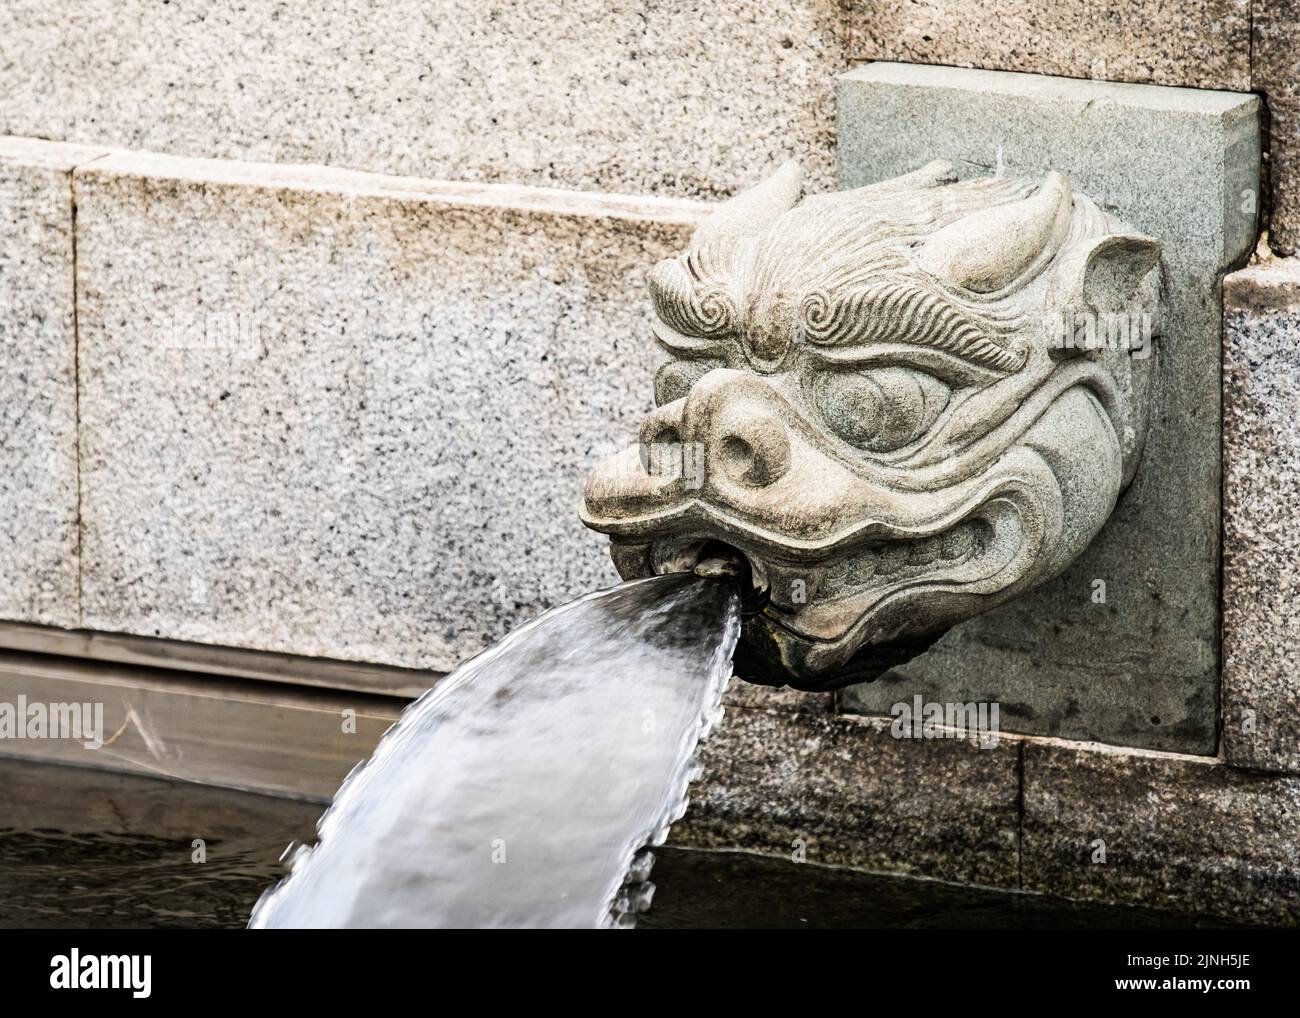 A dragon headed water spout at Chi Lin Nunnery, Hong Kong Stock Photo